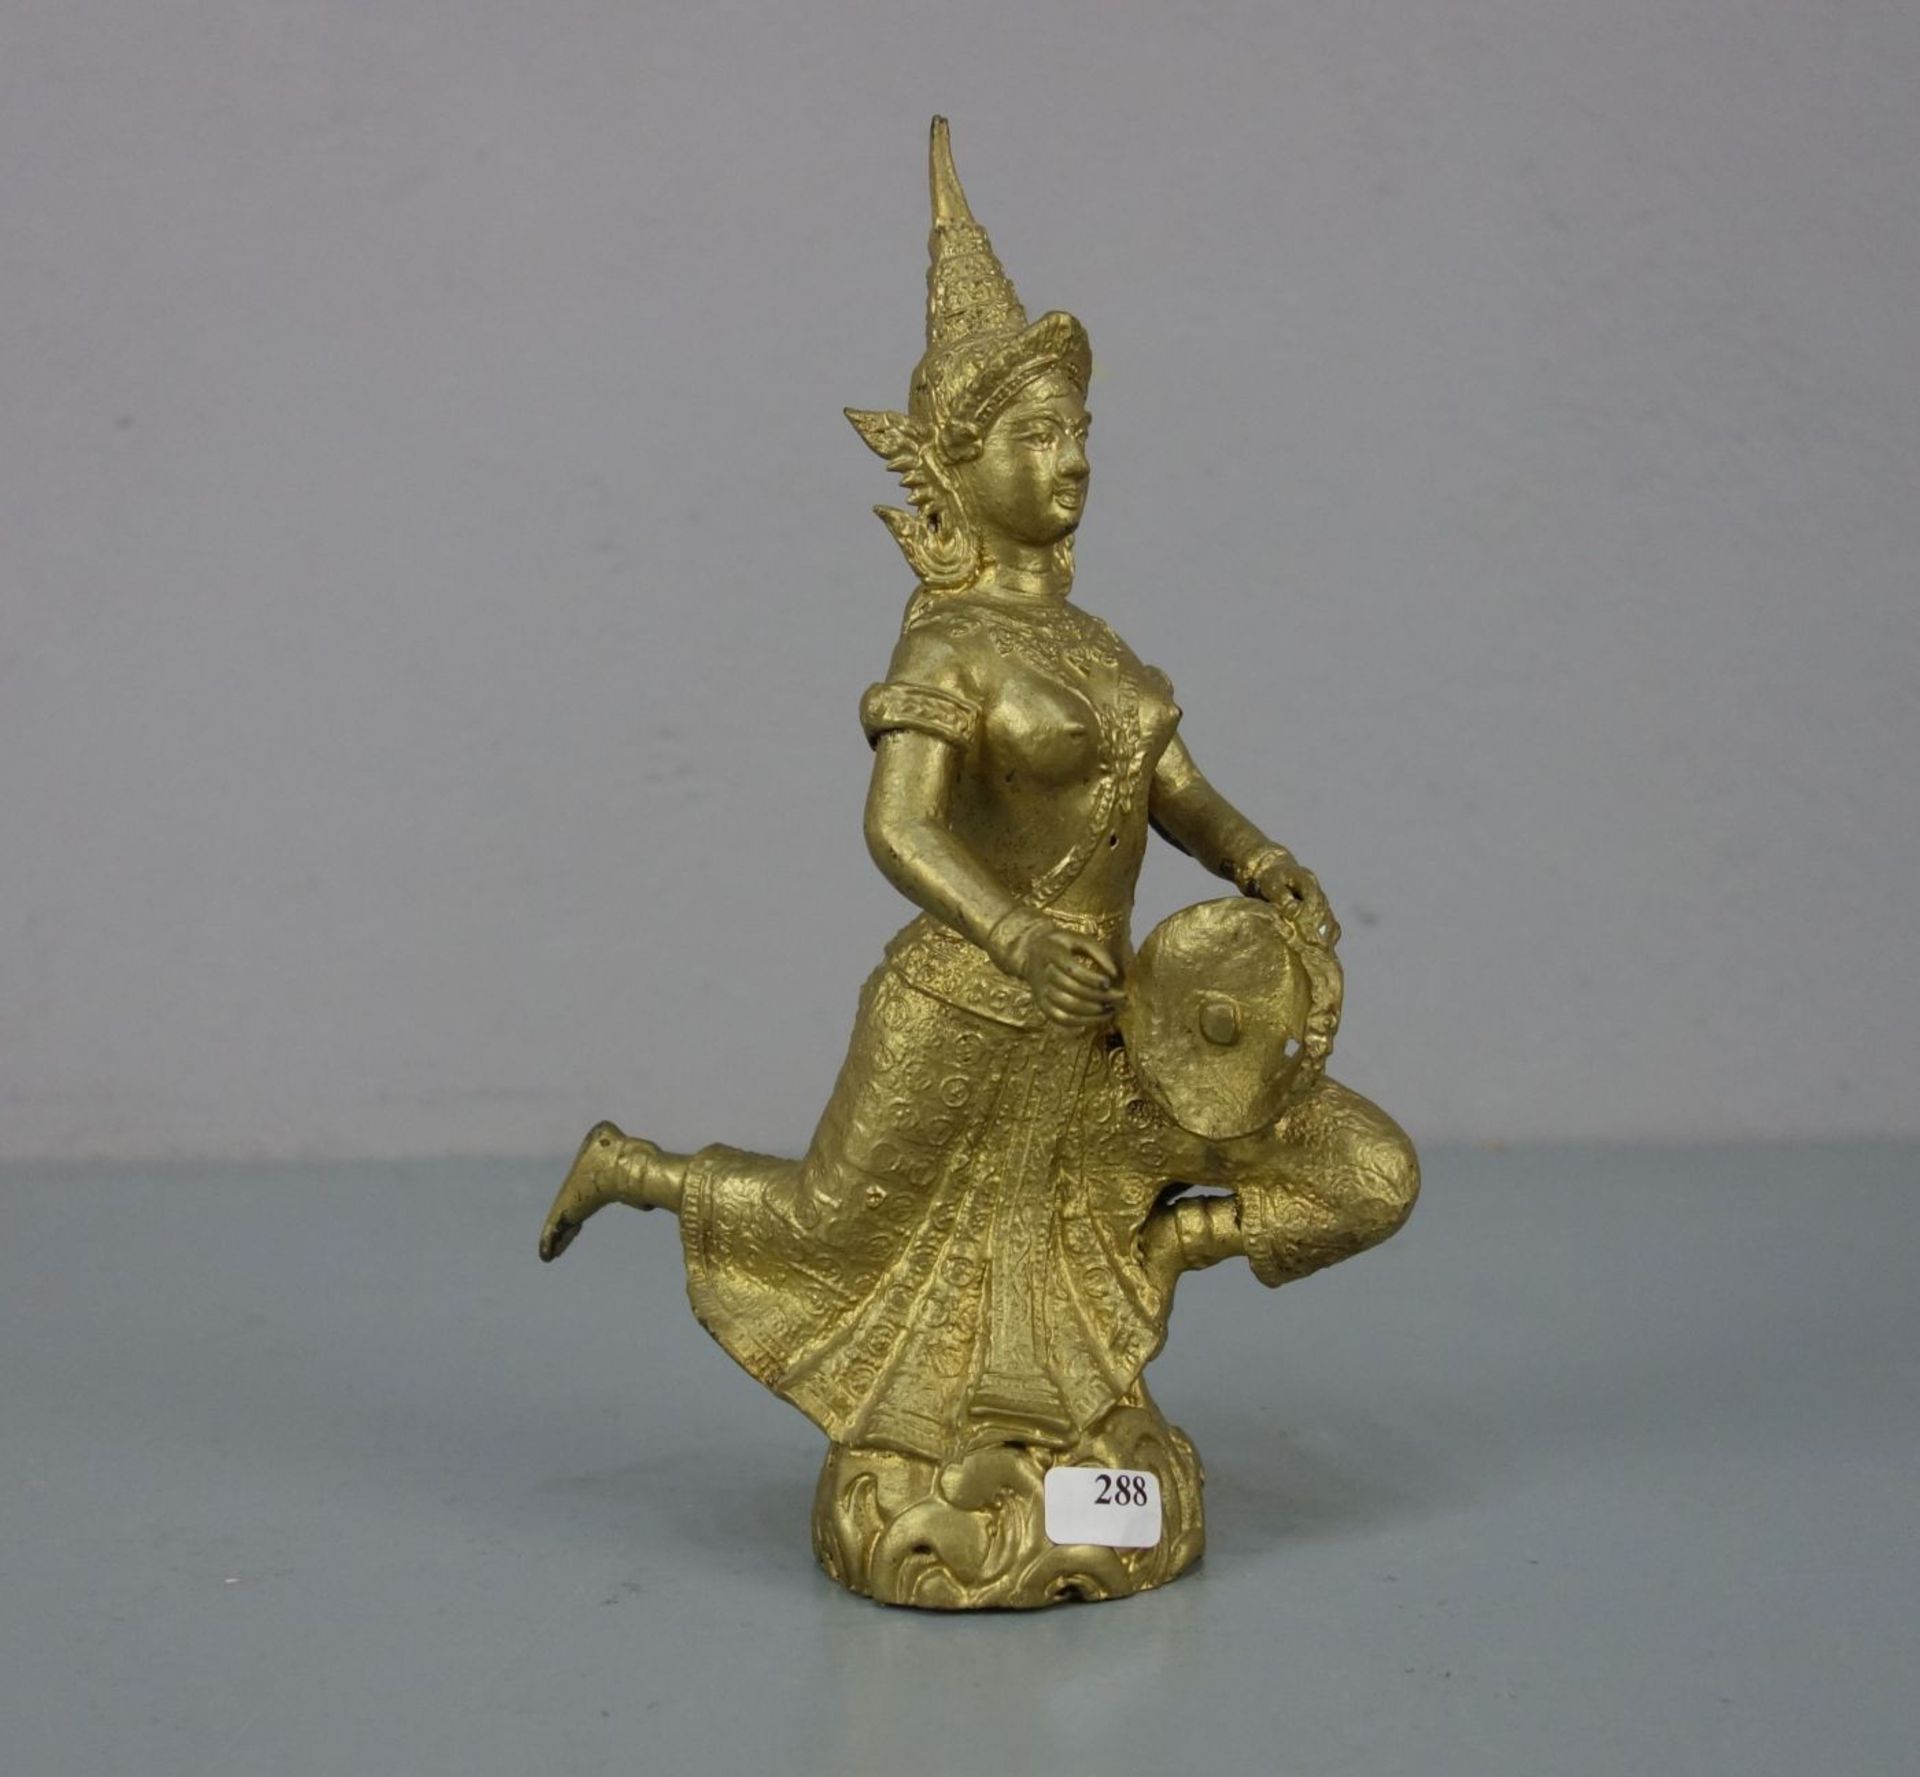 TEMPEL-SKULPTUR MIT INSTRUMENT / sculpture, goldbronziert, wohl Thailand 20. Jh. Vollplastische